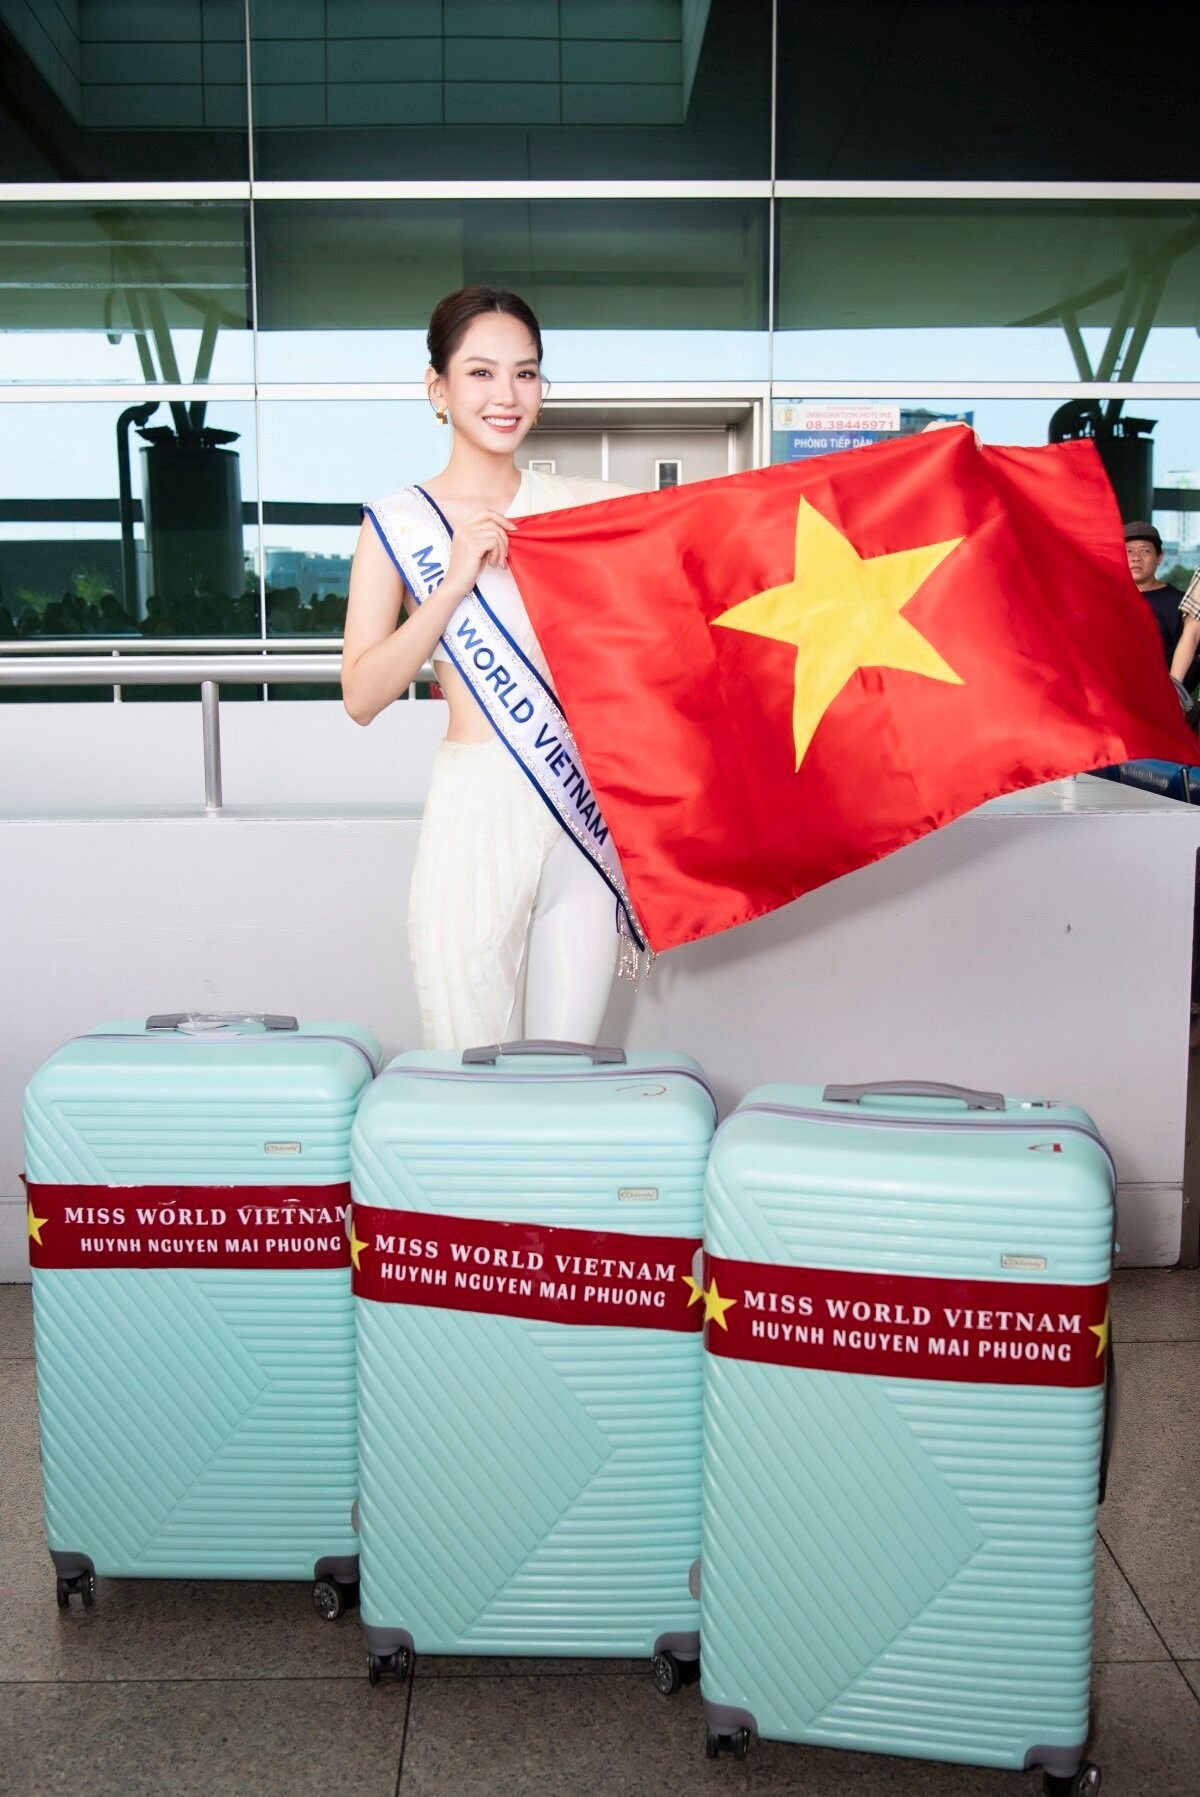 Được biết trong lần đi thi lần này, Hoa hậu Mai Phương mang theo 140 kg hành lý với hơn 30 bộ trang phục được chuẩn bị kỹ lưỡng.